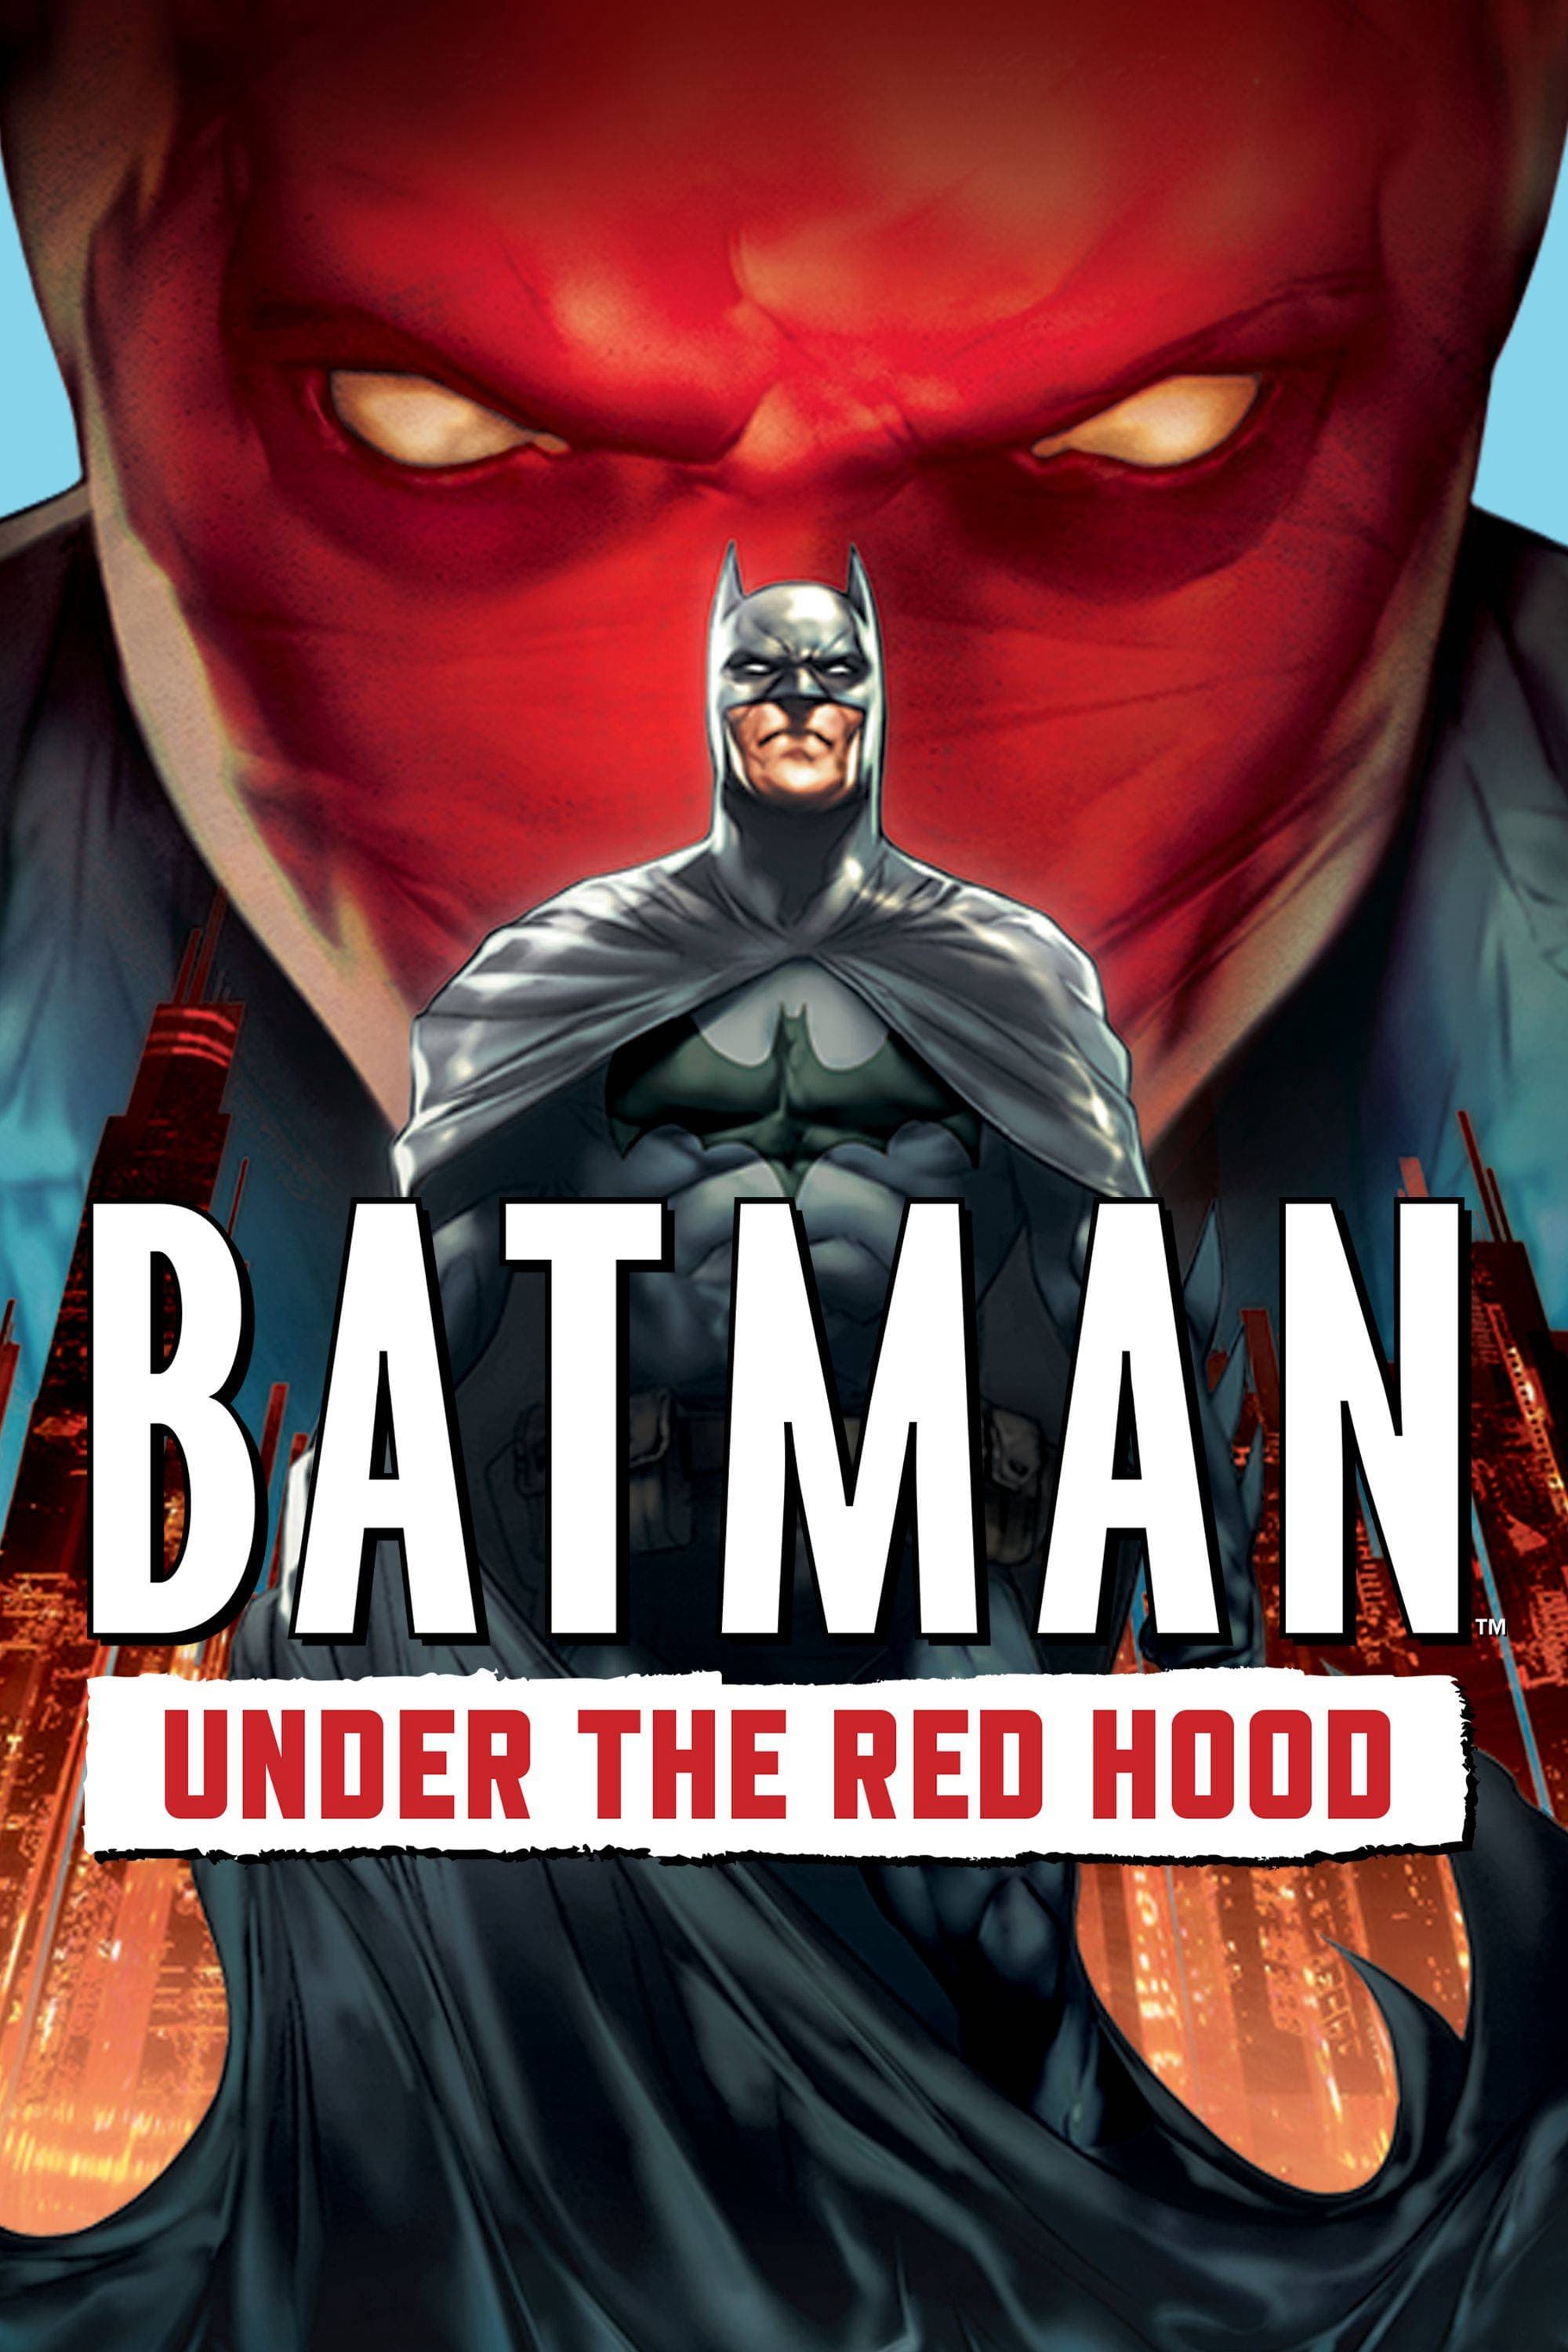 Batman: Under the Red Hood (Batman: Under the Red Hood) [2010]